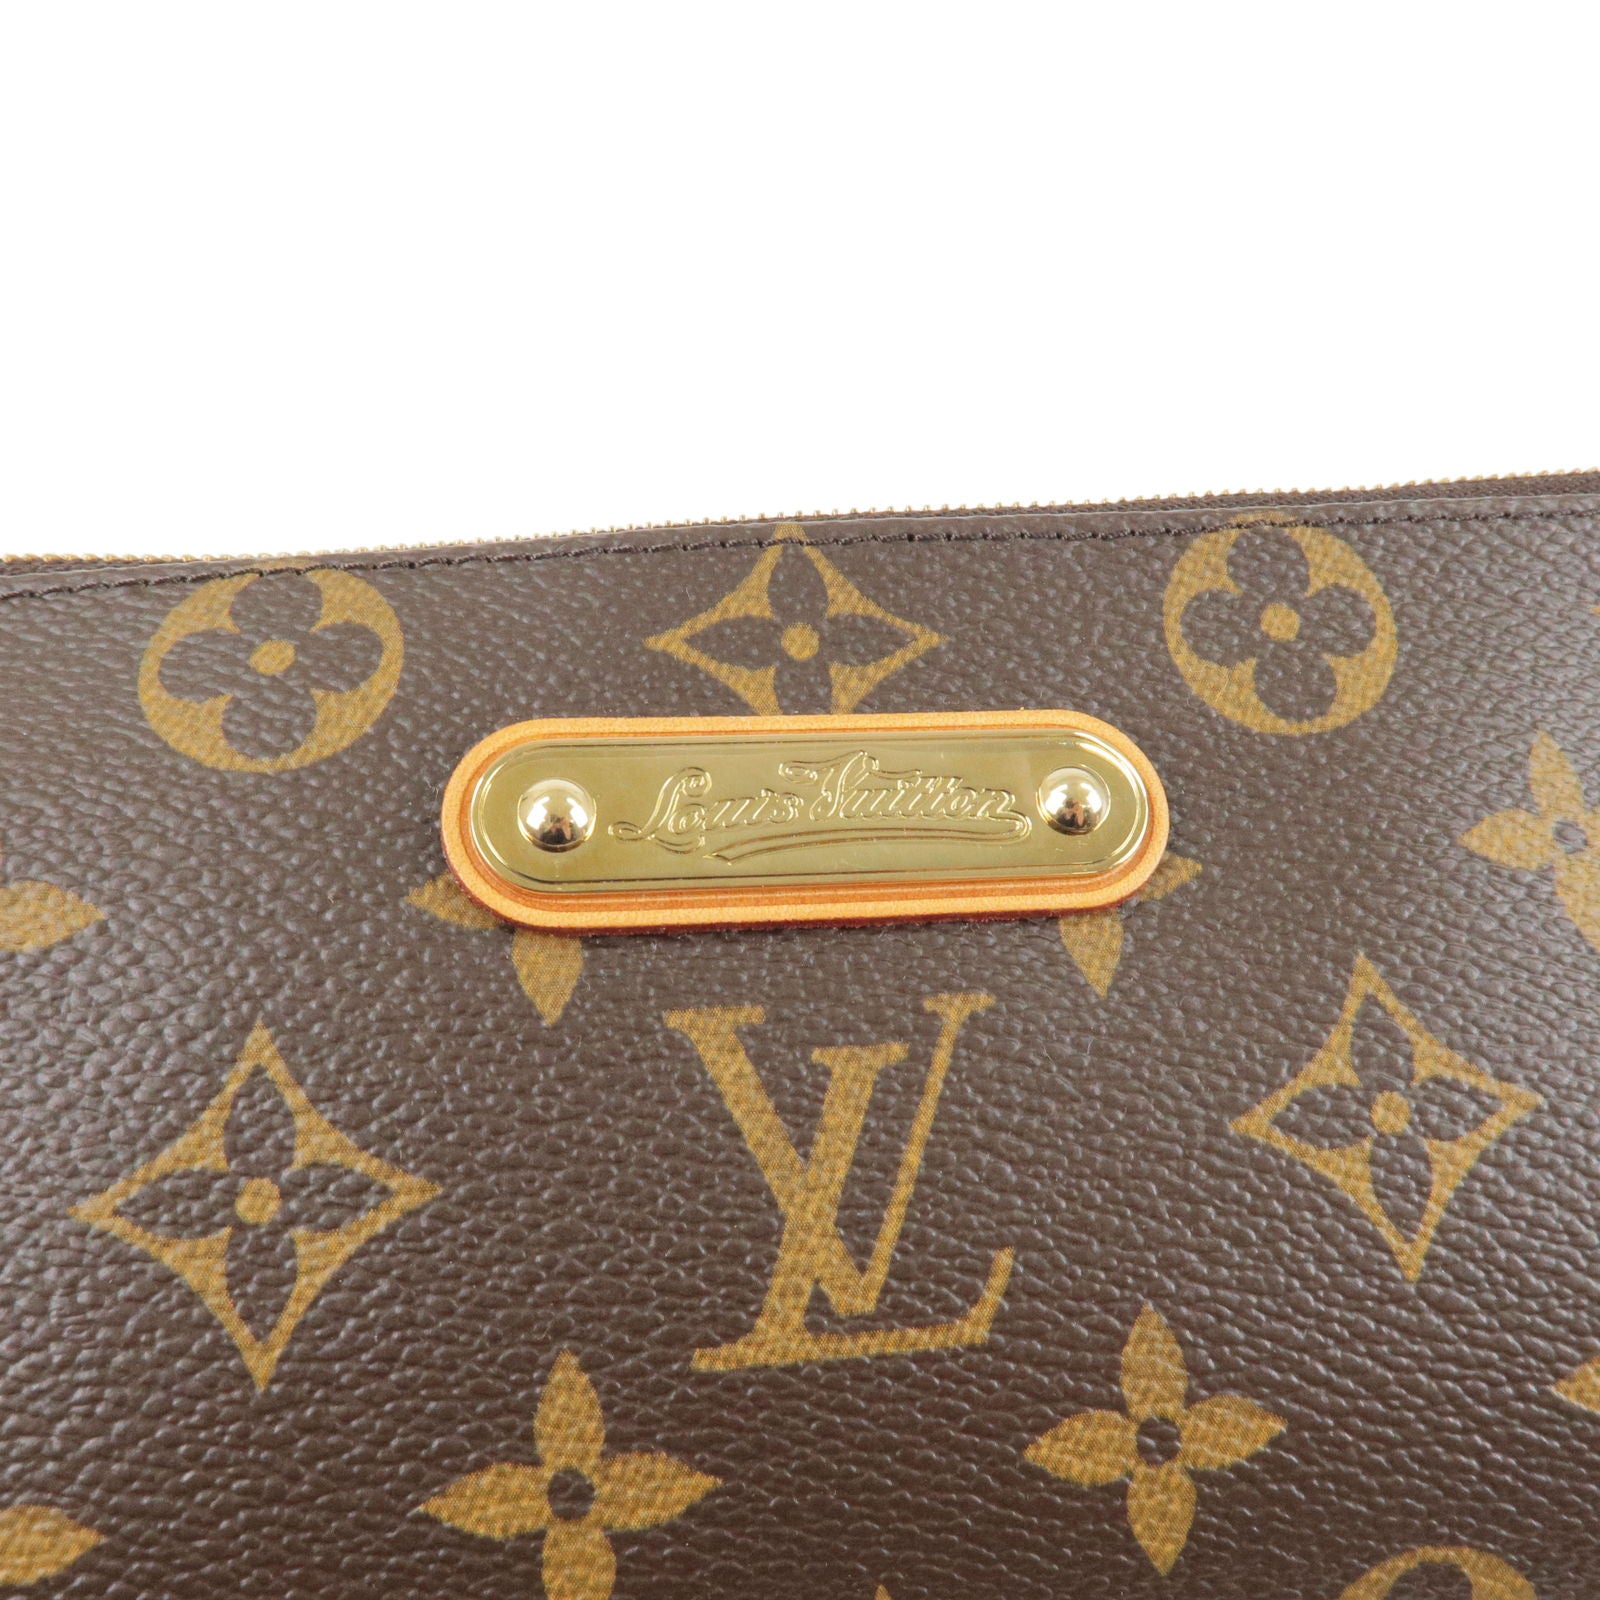 Louis-Vuitton-Monogram-Eva-2-Way-Pouch-Shoulder-Bag-M95567 – dct